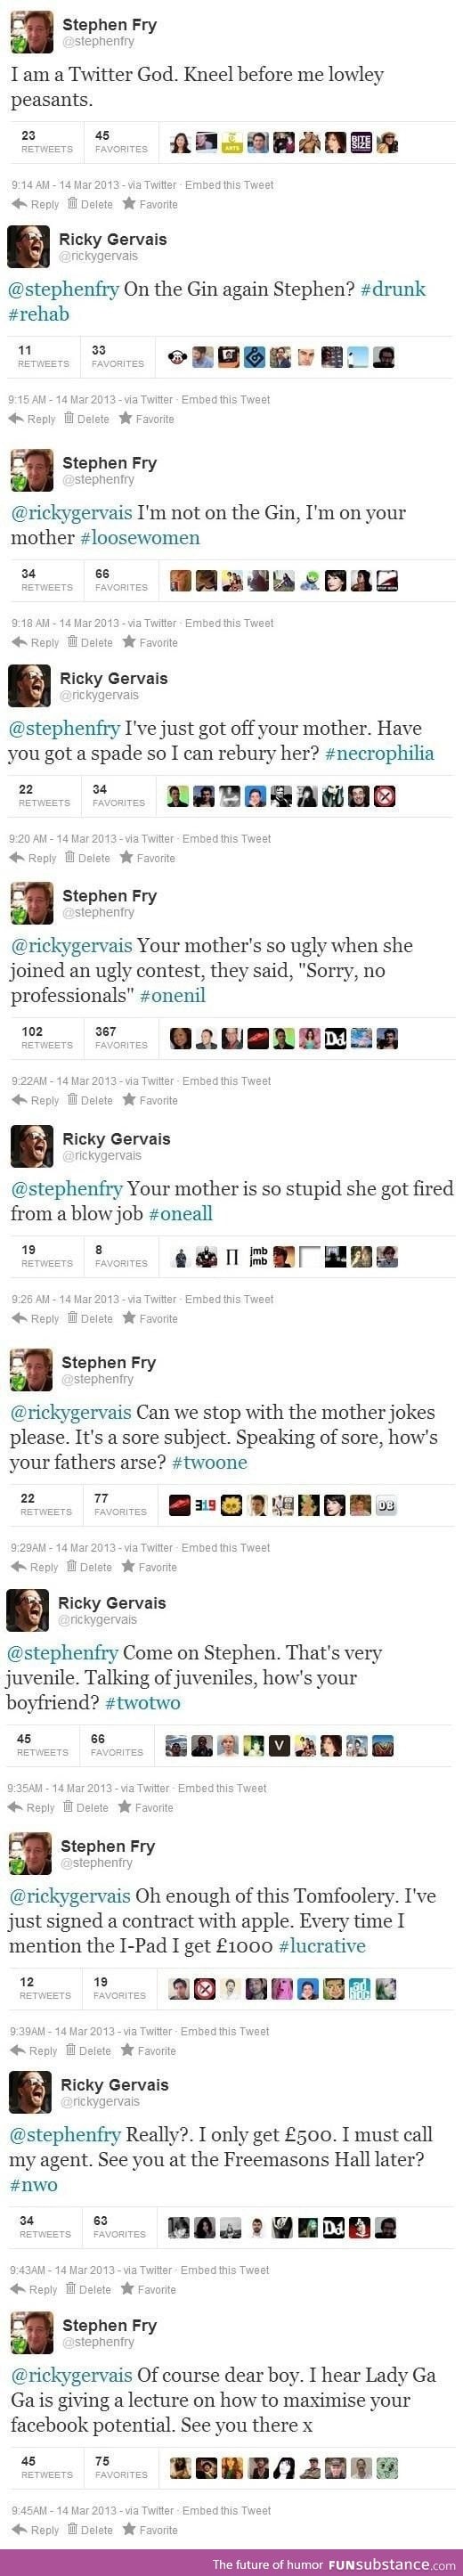 Ricky Gervais vs Stephen Fry